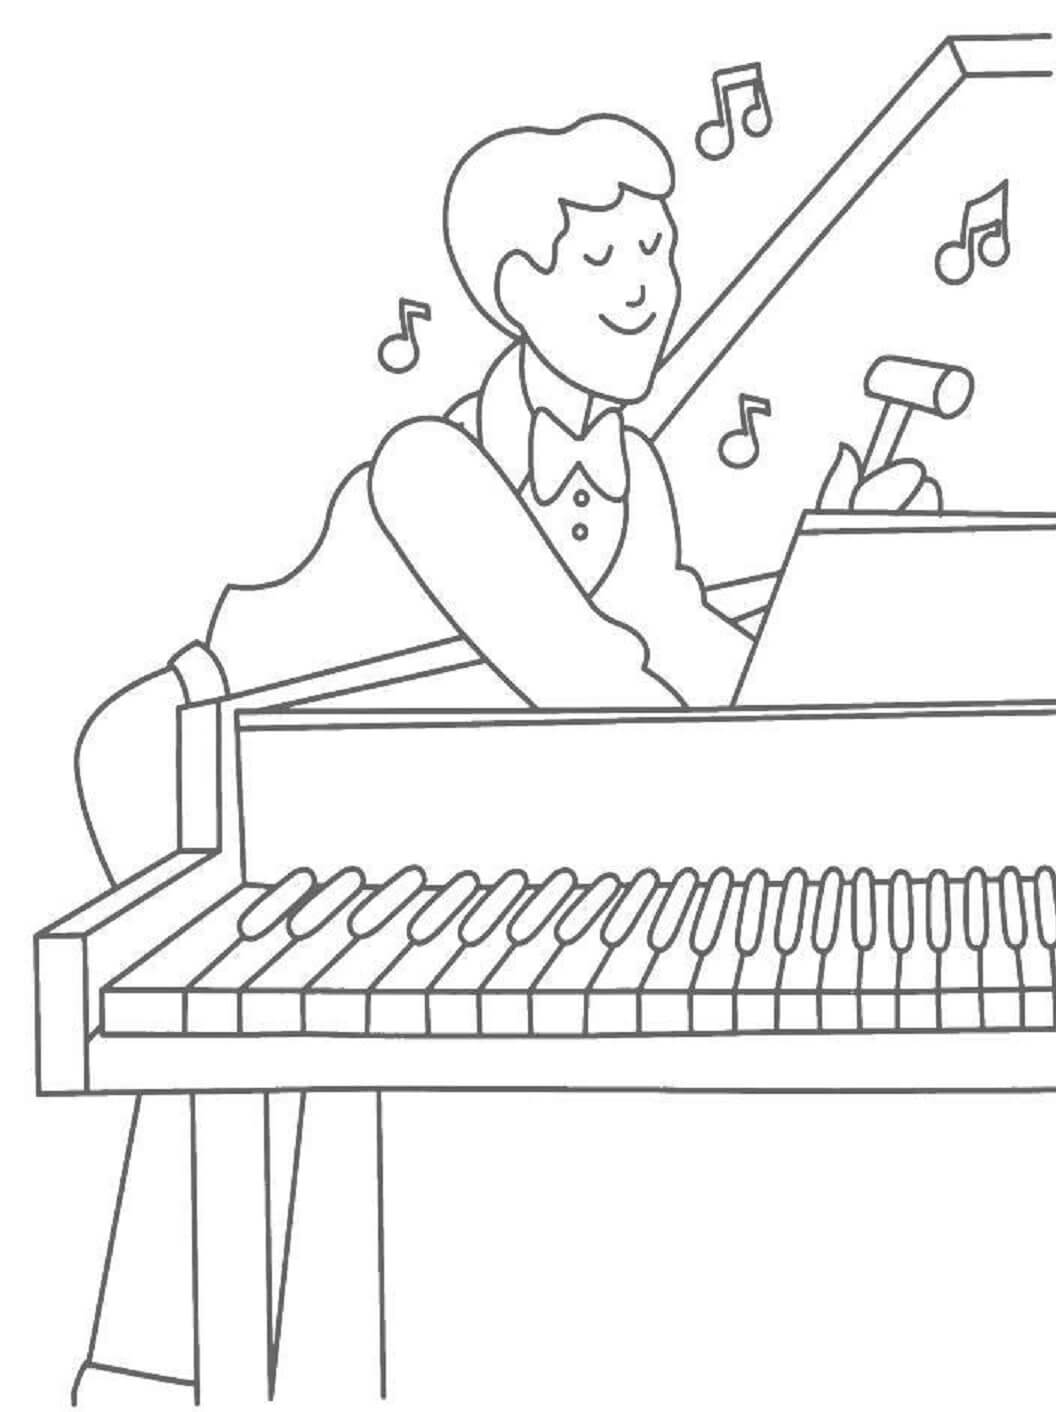 피아노를 치는 행복한 남자